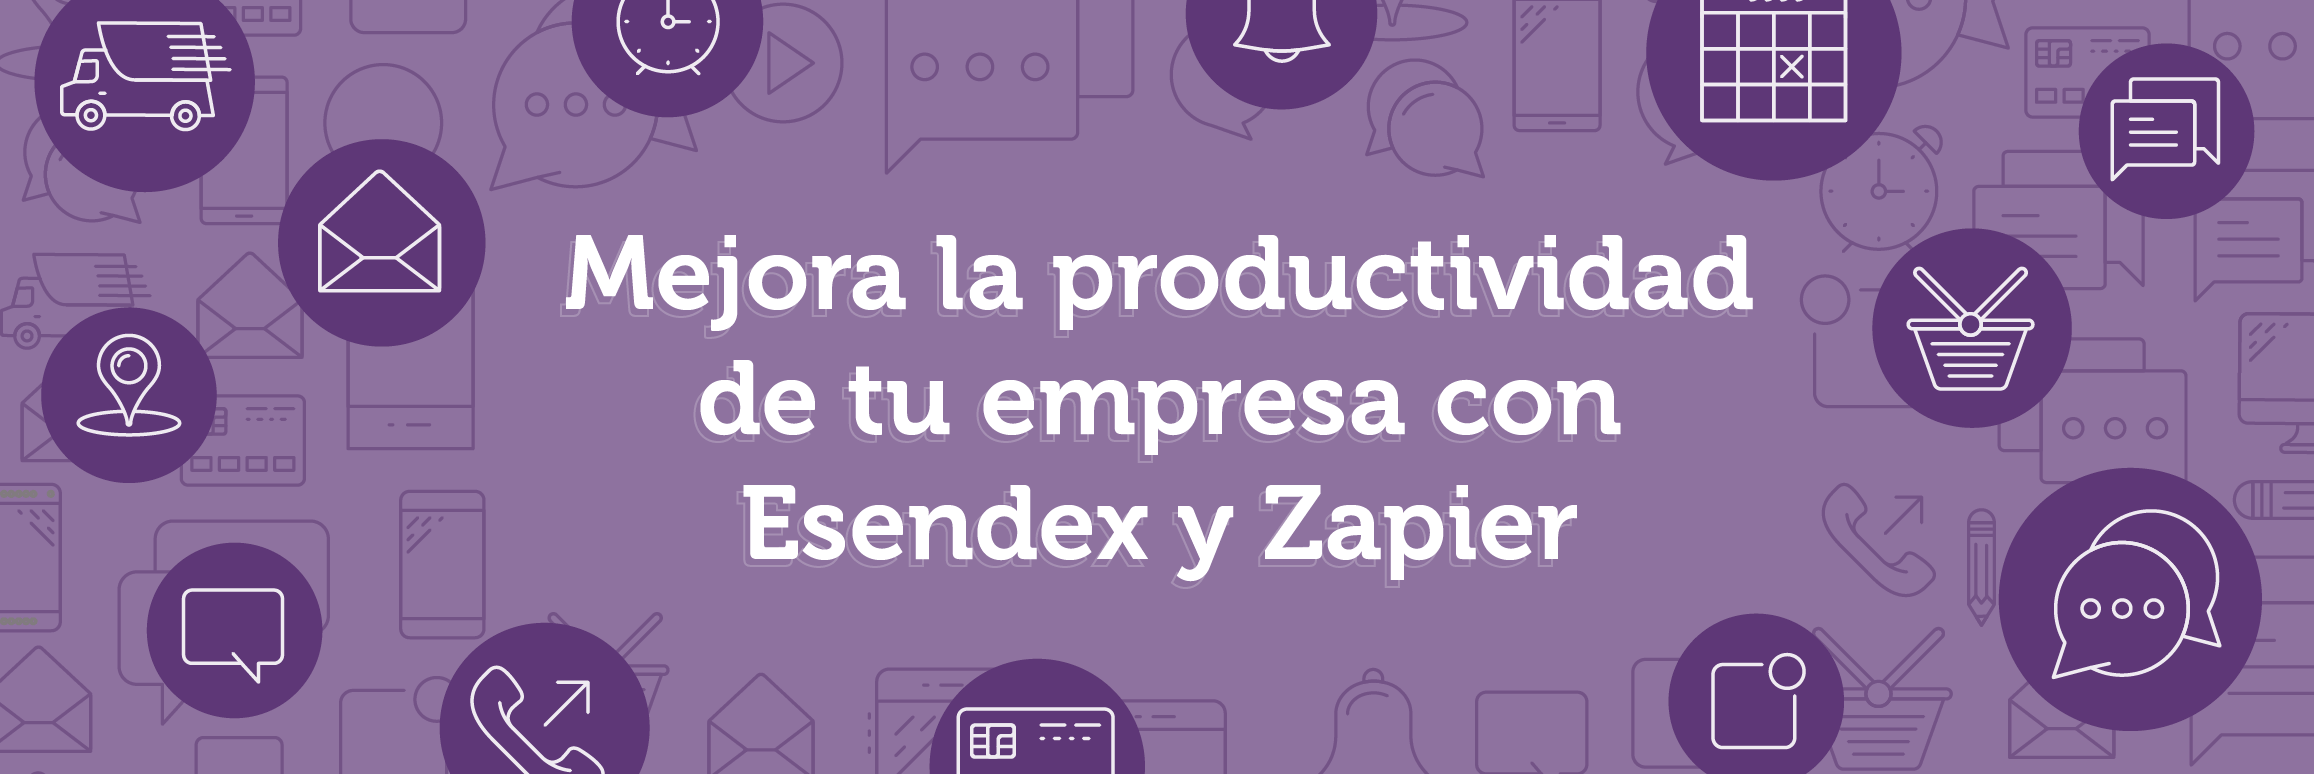 Mejora la productividad de tu empresa con Esendex y Zapier